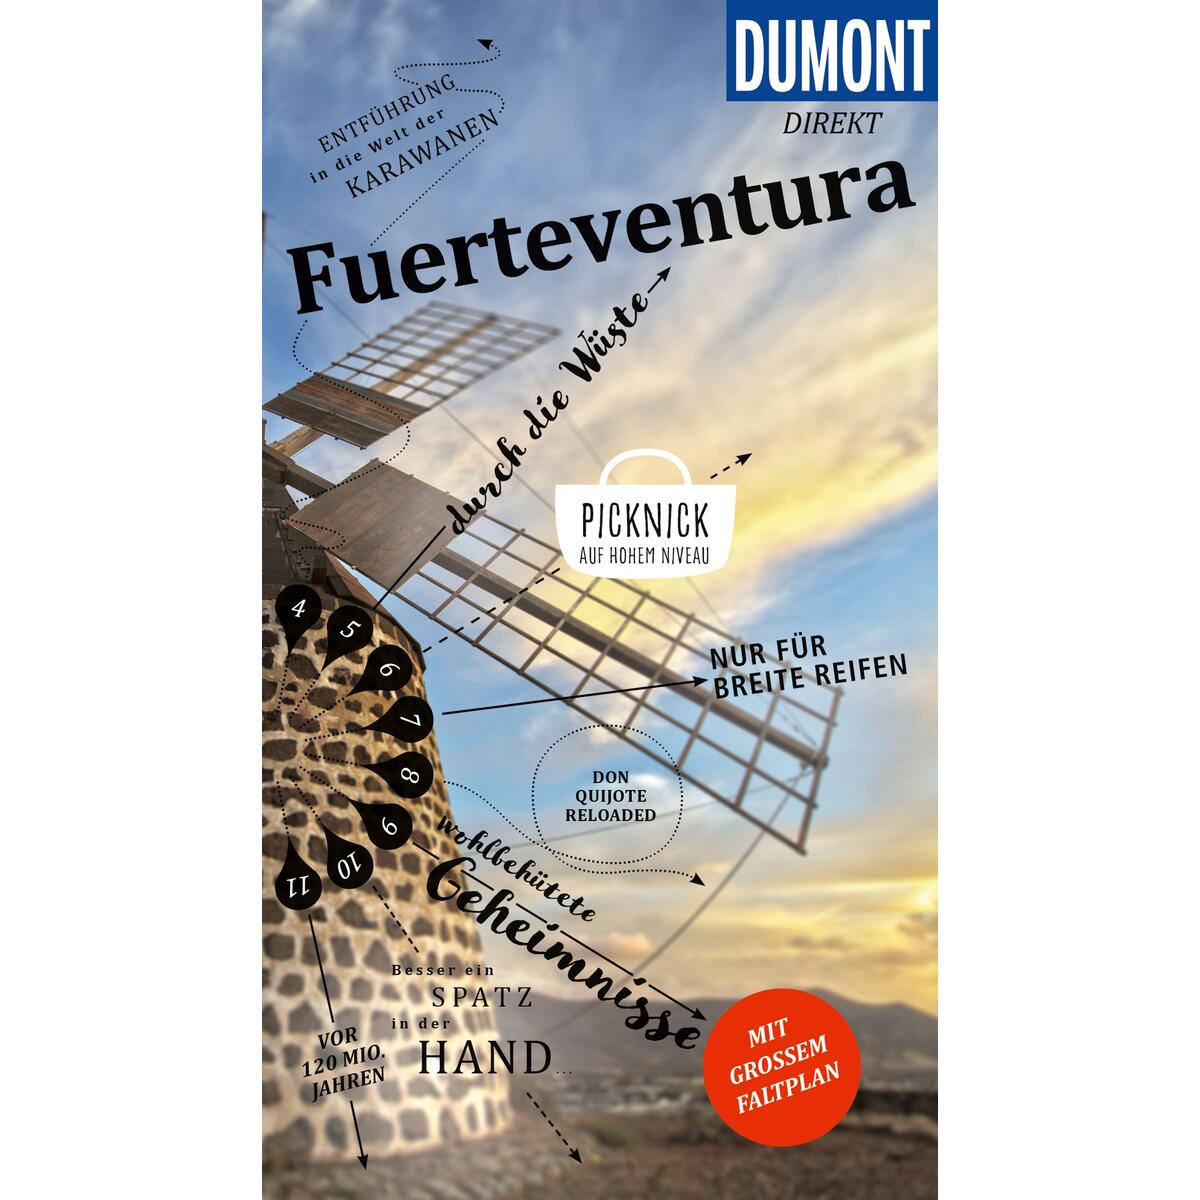 DuMont direkt Reiseführer Fuerteventura von Dumont Reise Vlg GmbH + C